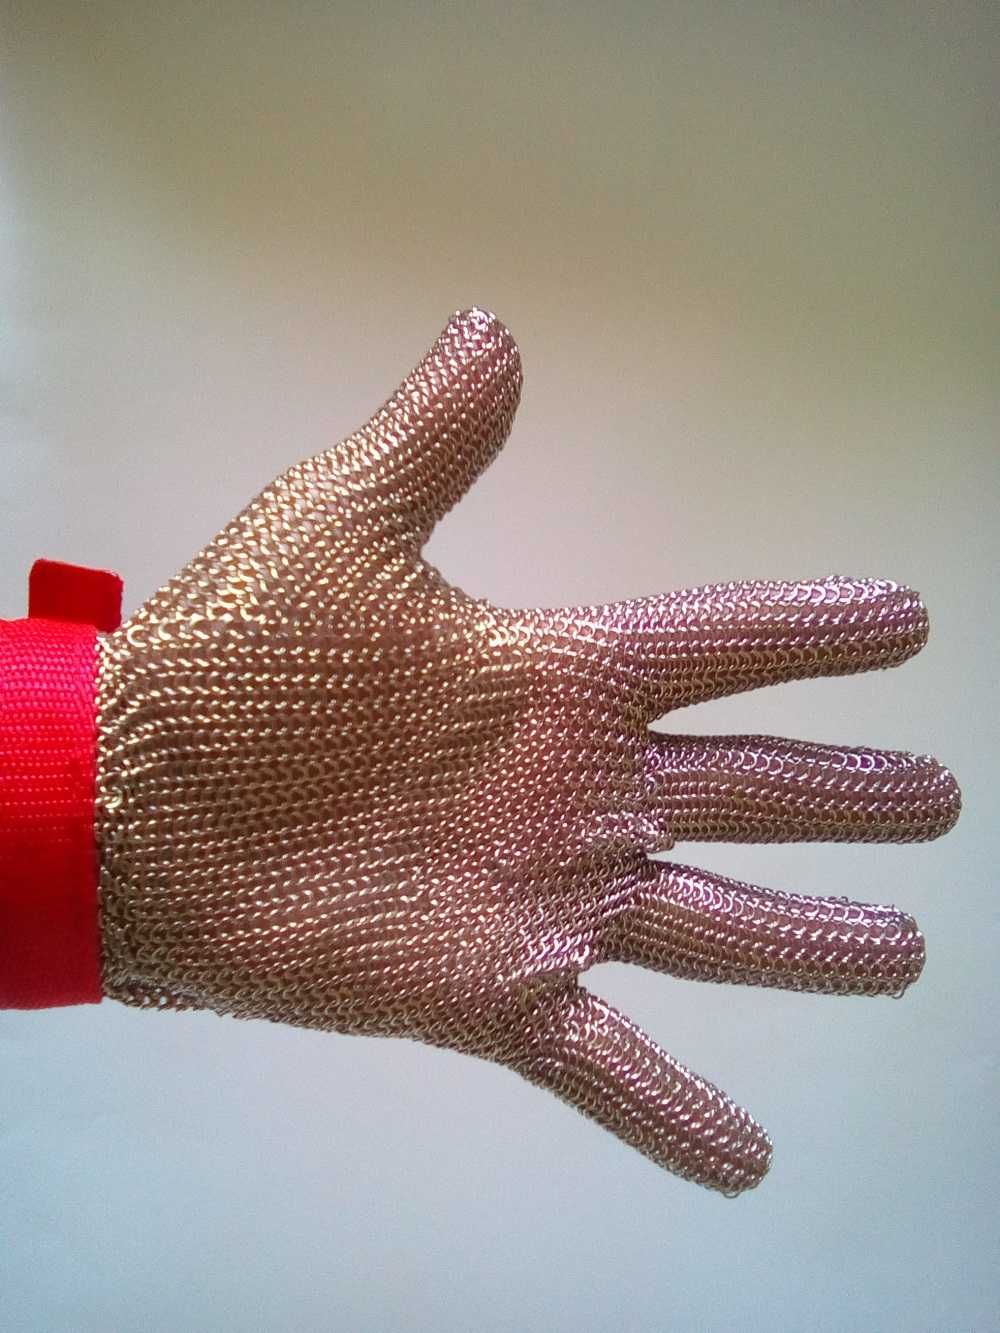 Нова Метална ръкавица против порязване размер М